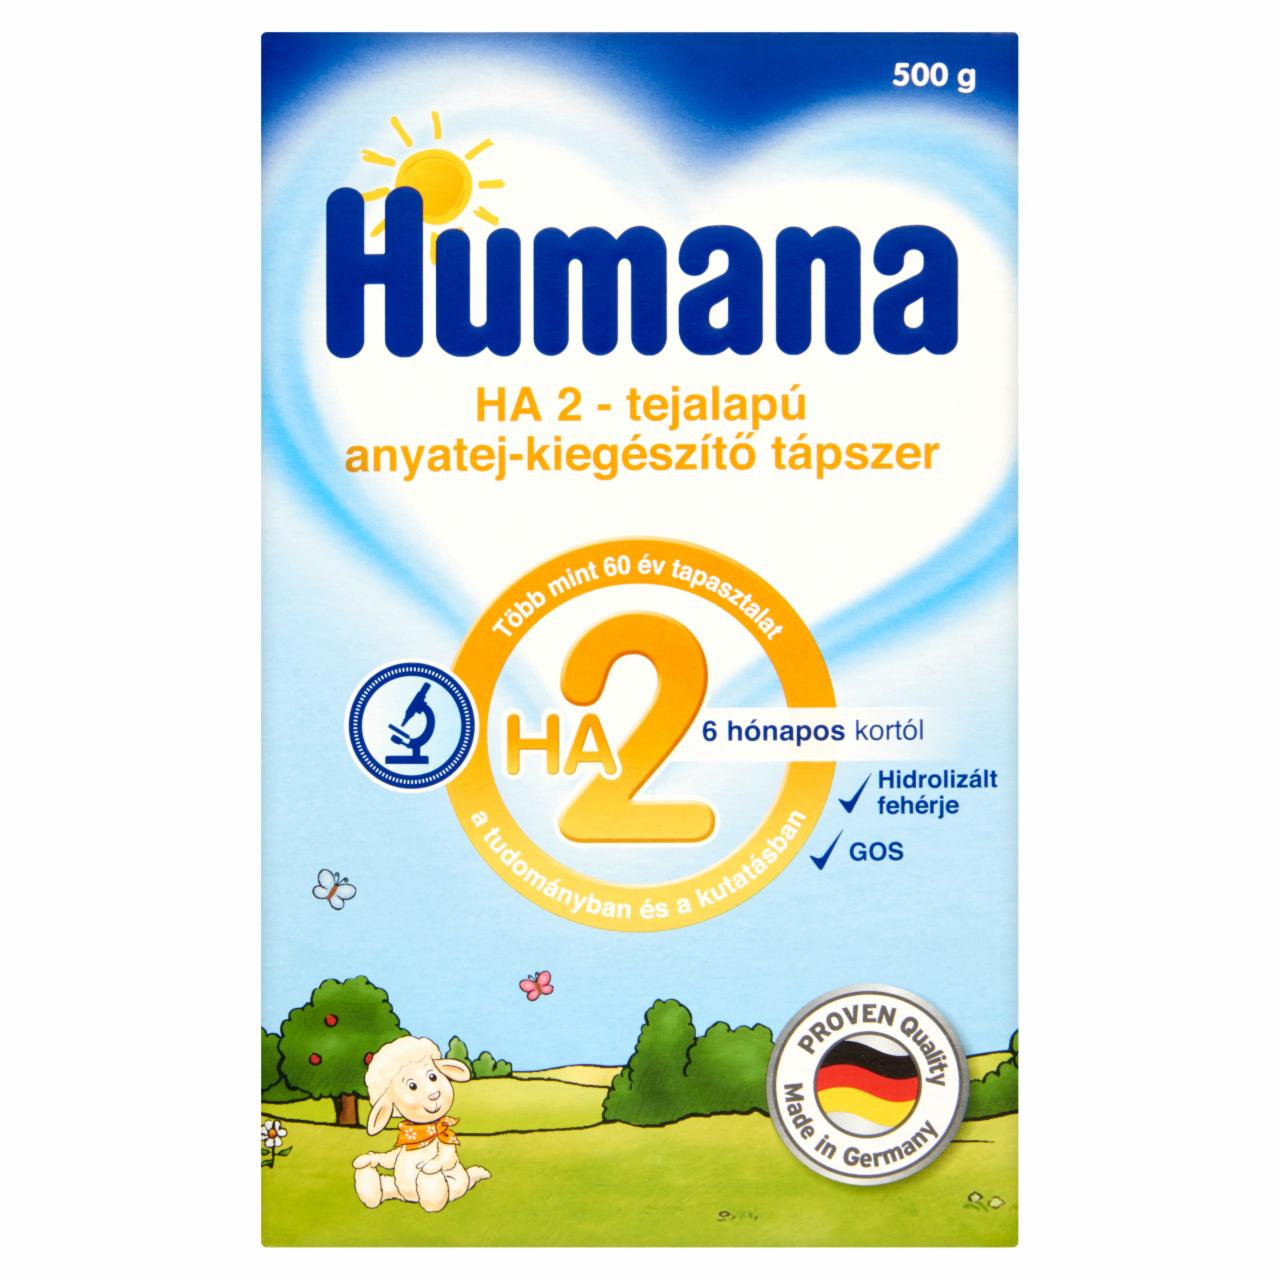 Képek - Humana HA 2 tejalapú anyatej-kiegészítő tápszer 6 hónapos kortól 500 g